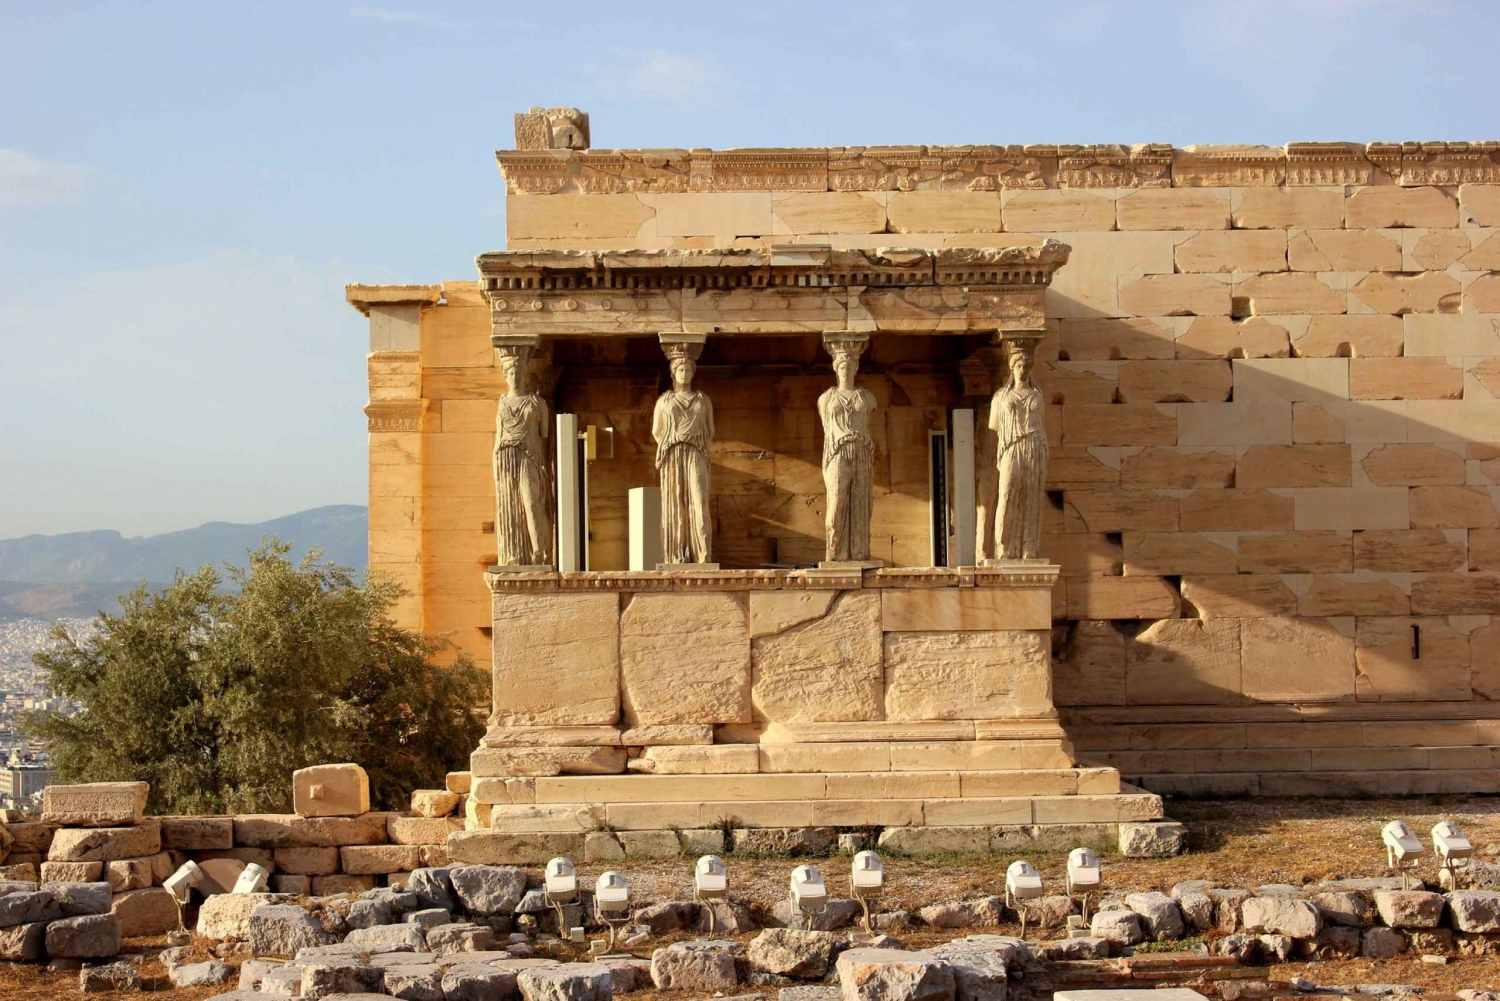 Ateny: Prywatna wycieczka z przewodnikiem po Akropolu